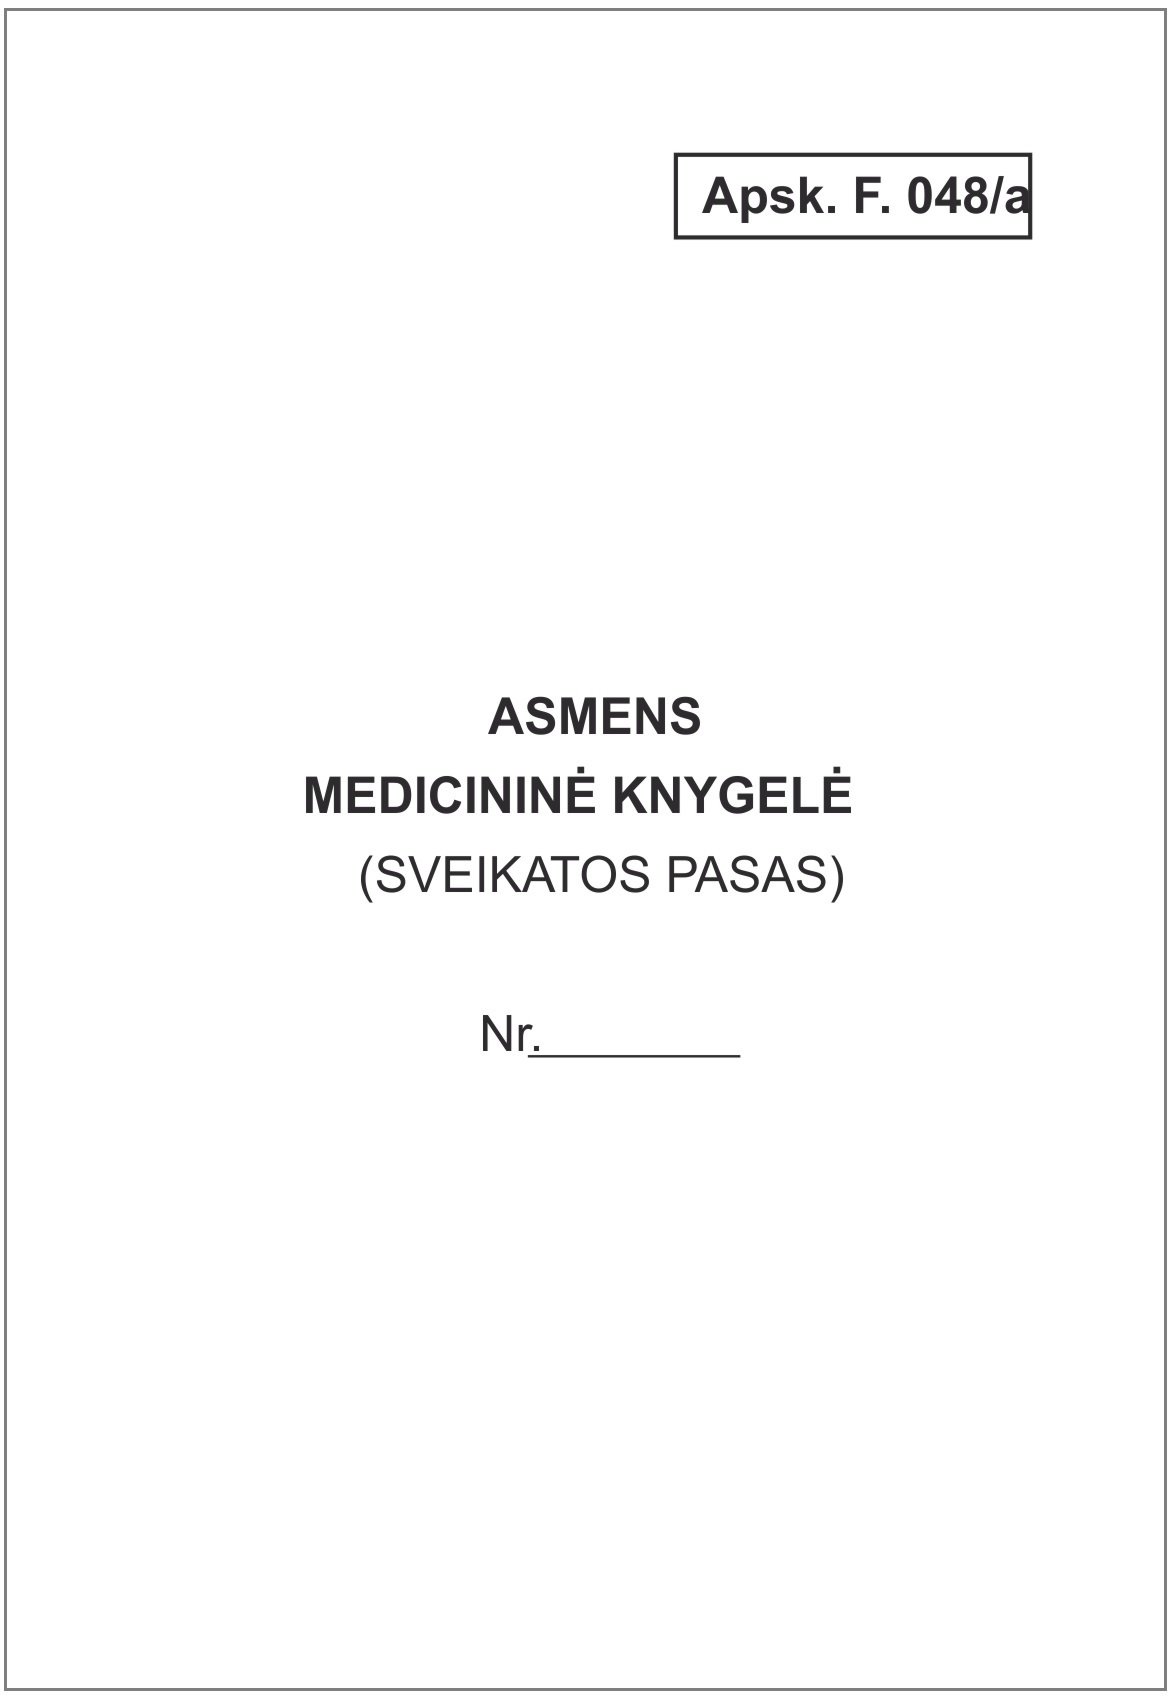 Asmens medicininė knygelė, baltos sp., 12 lapų